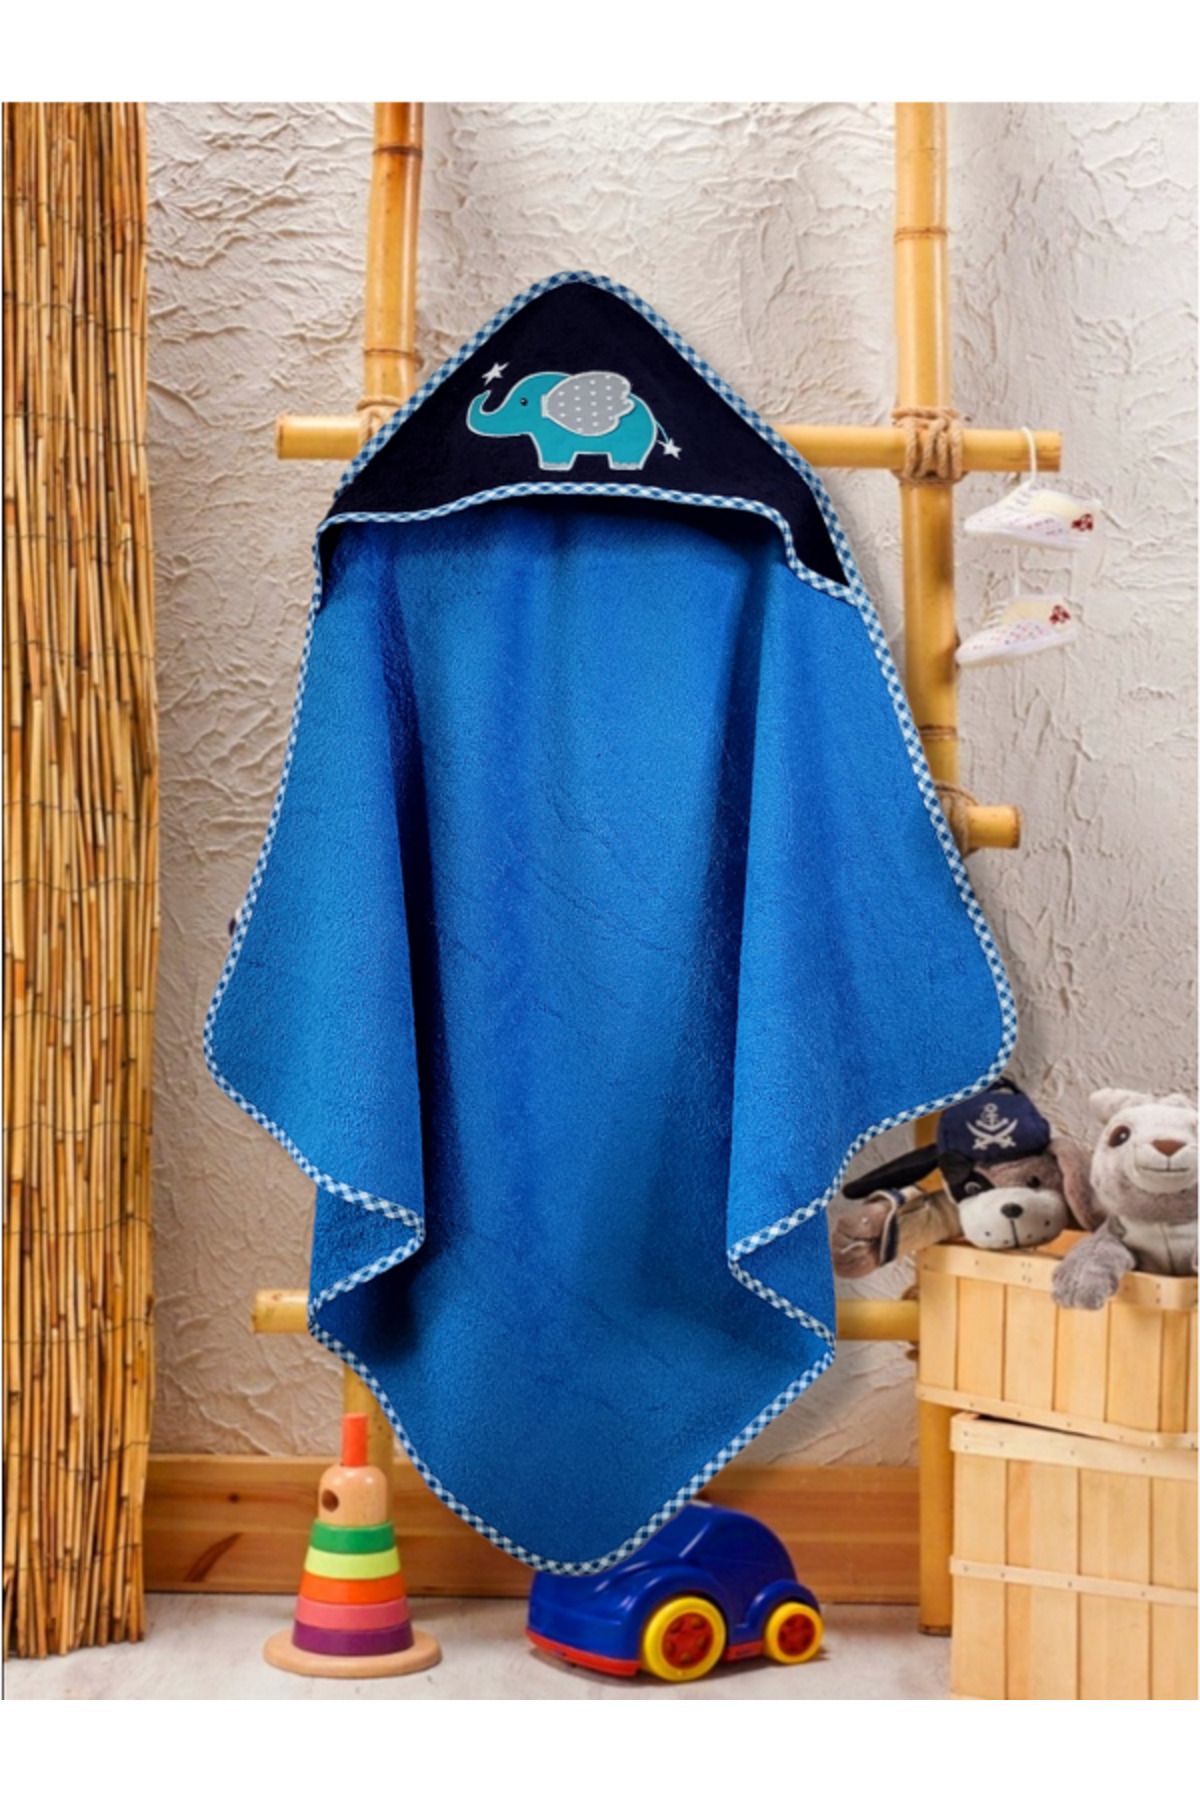 Alpar Tekstil %100 Pamuklu Bebek Banyo Havlu Kundak 80x80cm Mavi/ Fil